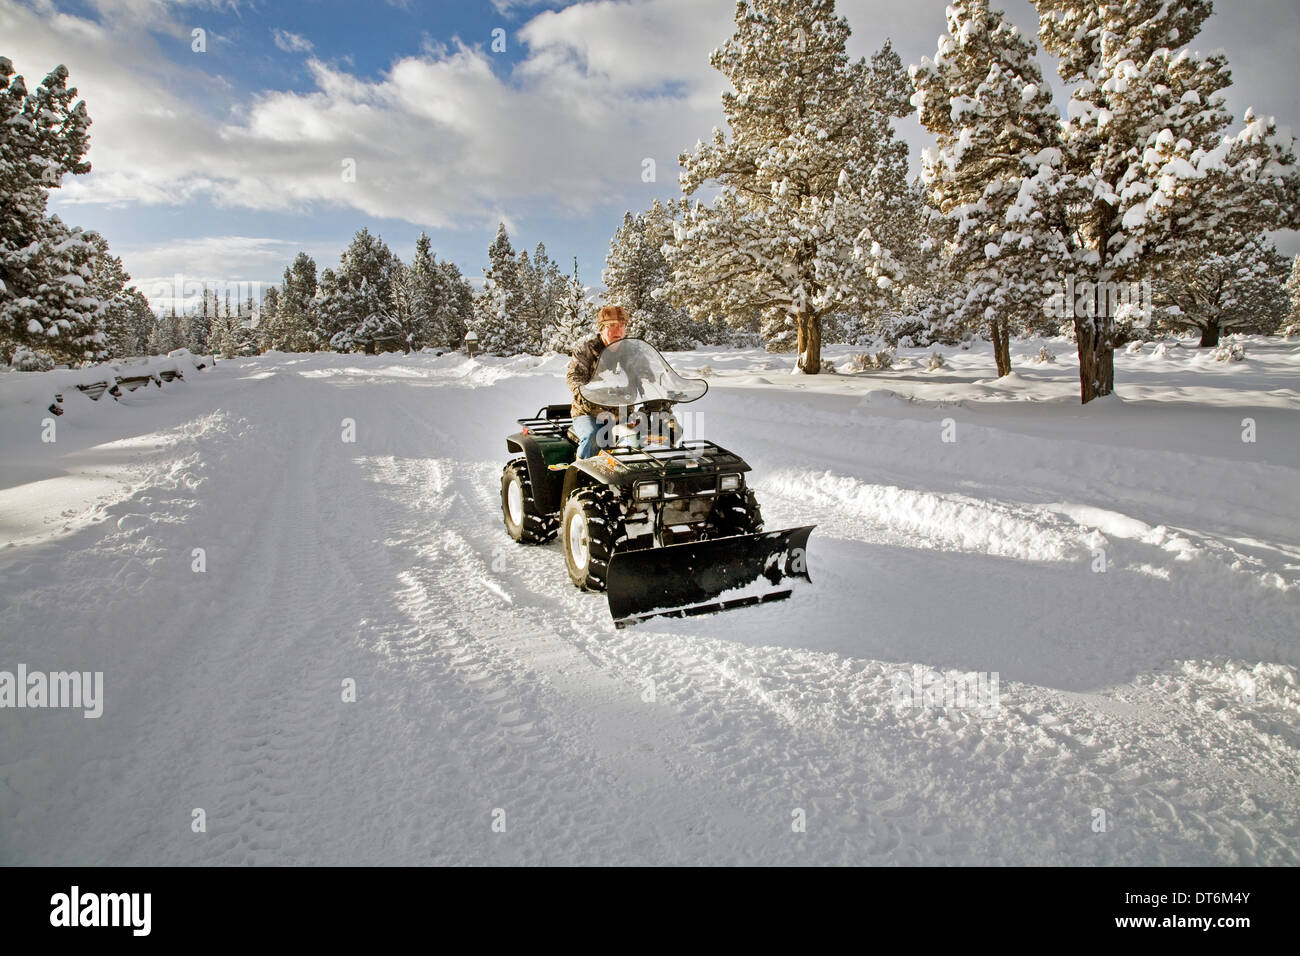 Una persona de la tercera edad los arados de nieve con un ATV, vehículo todo terreno, después de una gran tormenta de nieve en el centro de Oregon. Foto de stock